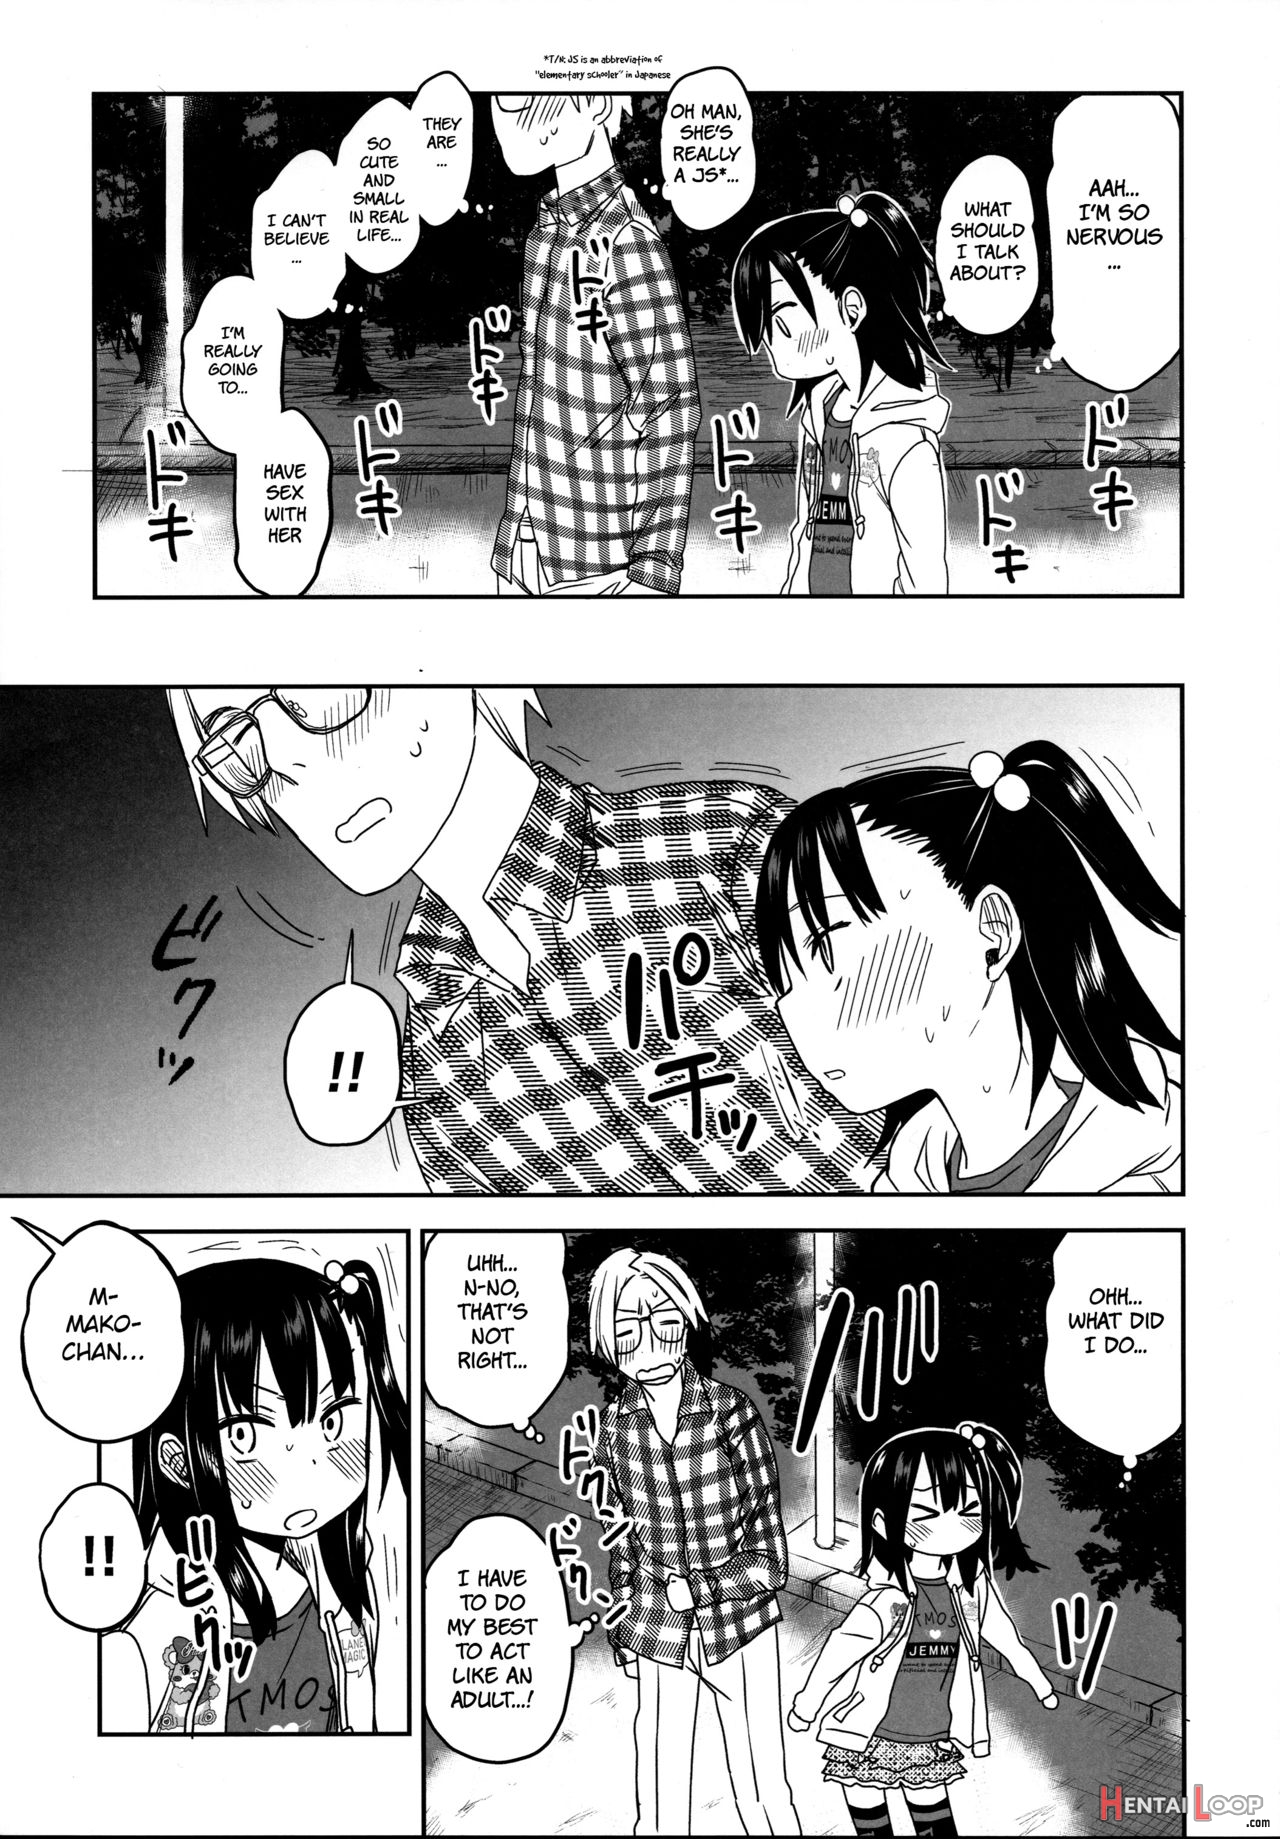 Tonari No Mako-chan Season 2 Vol. 2 page 11